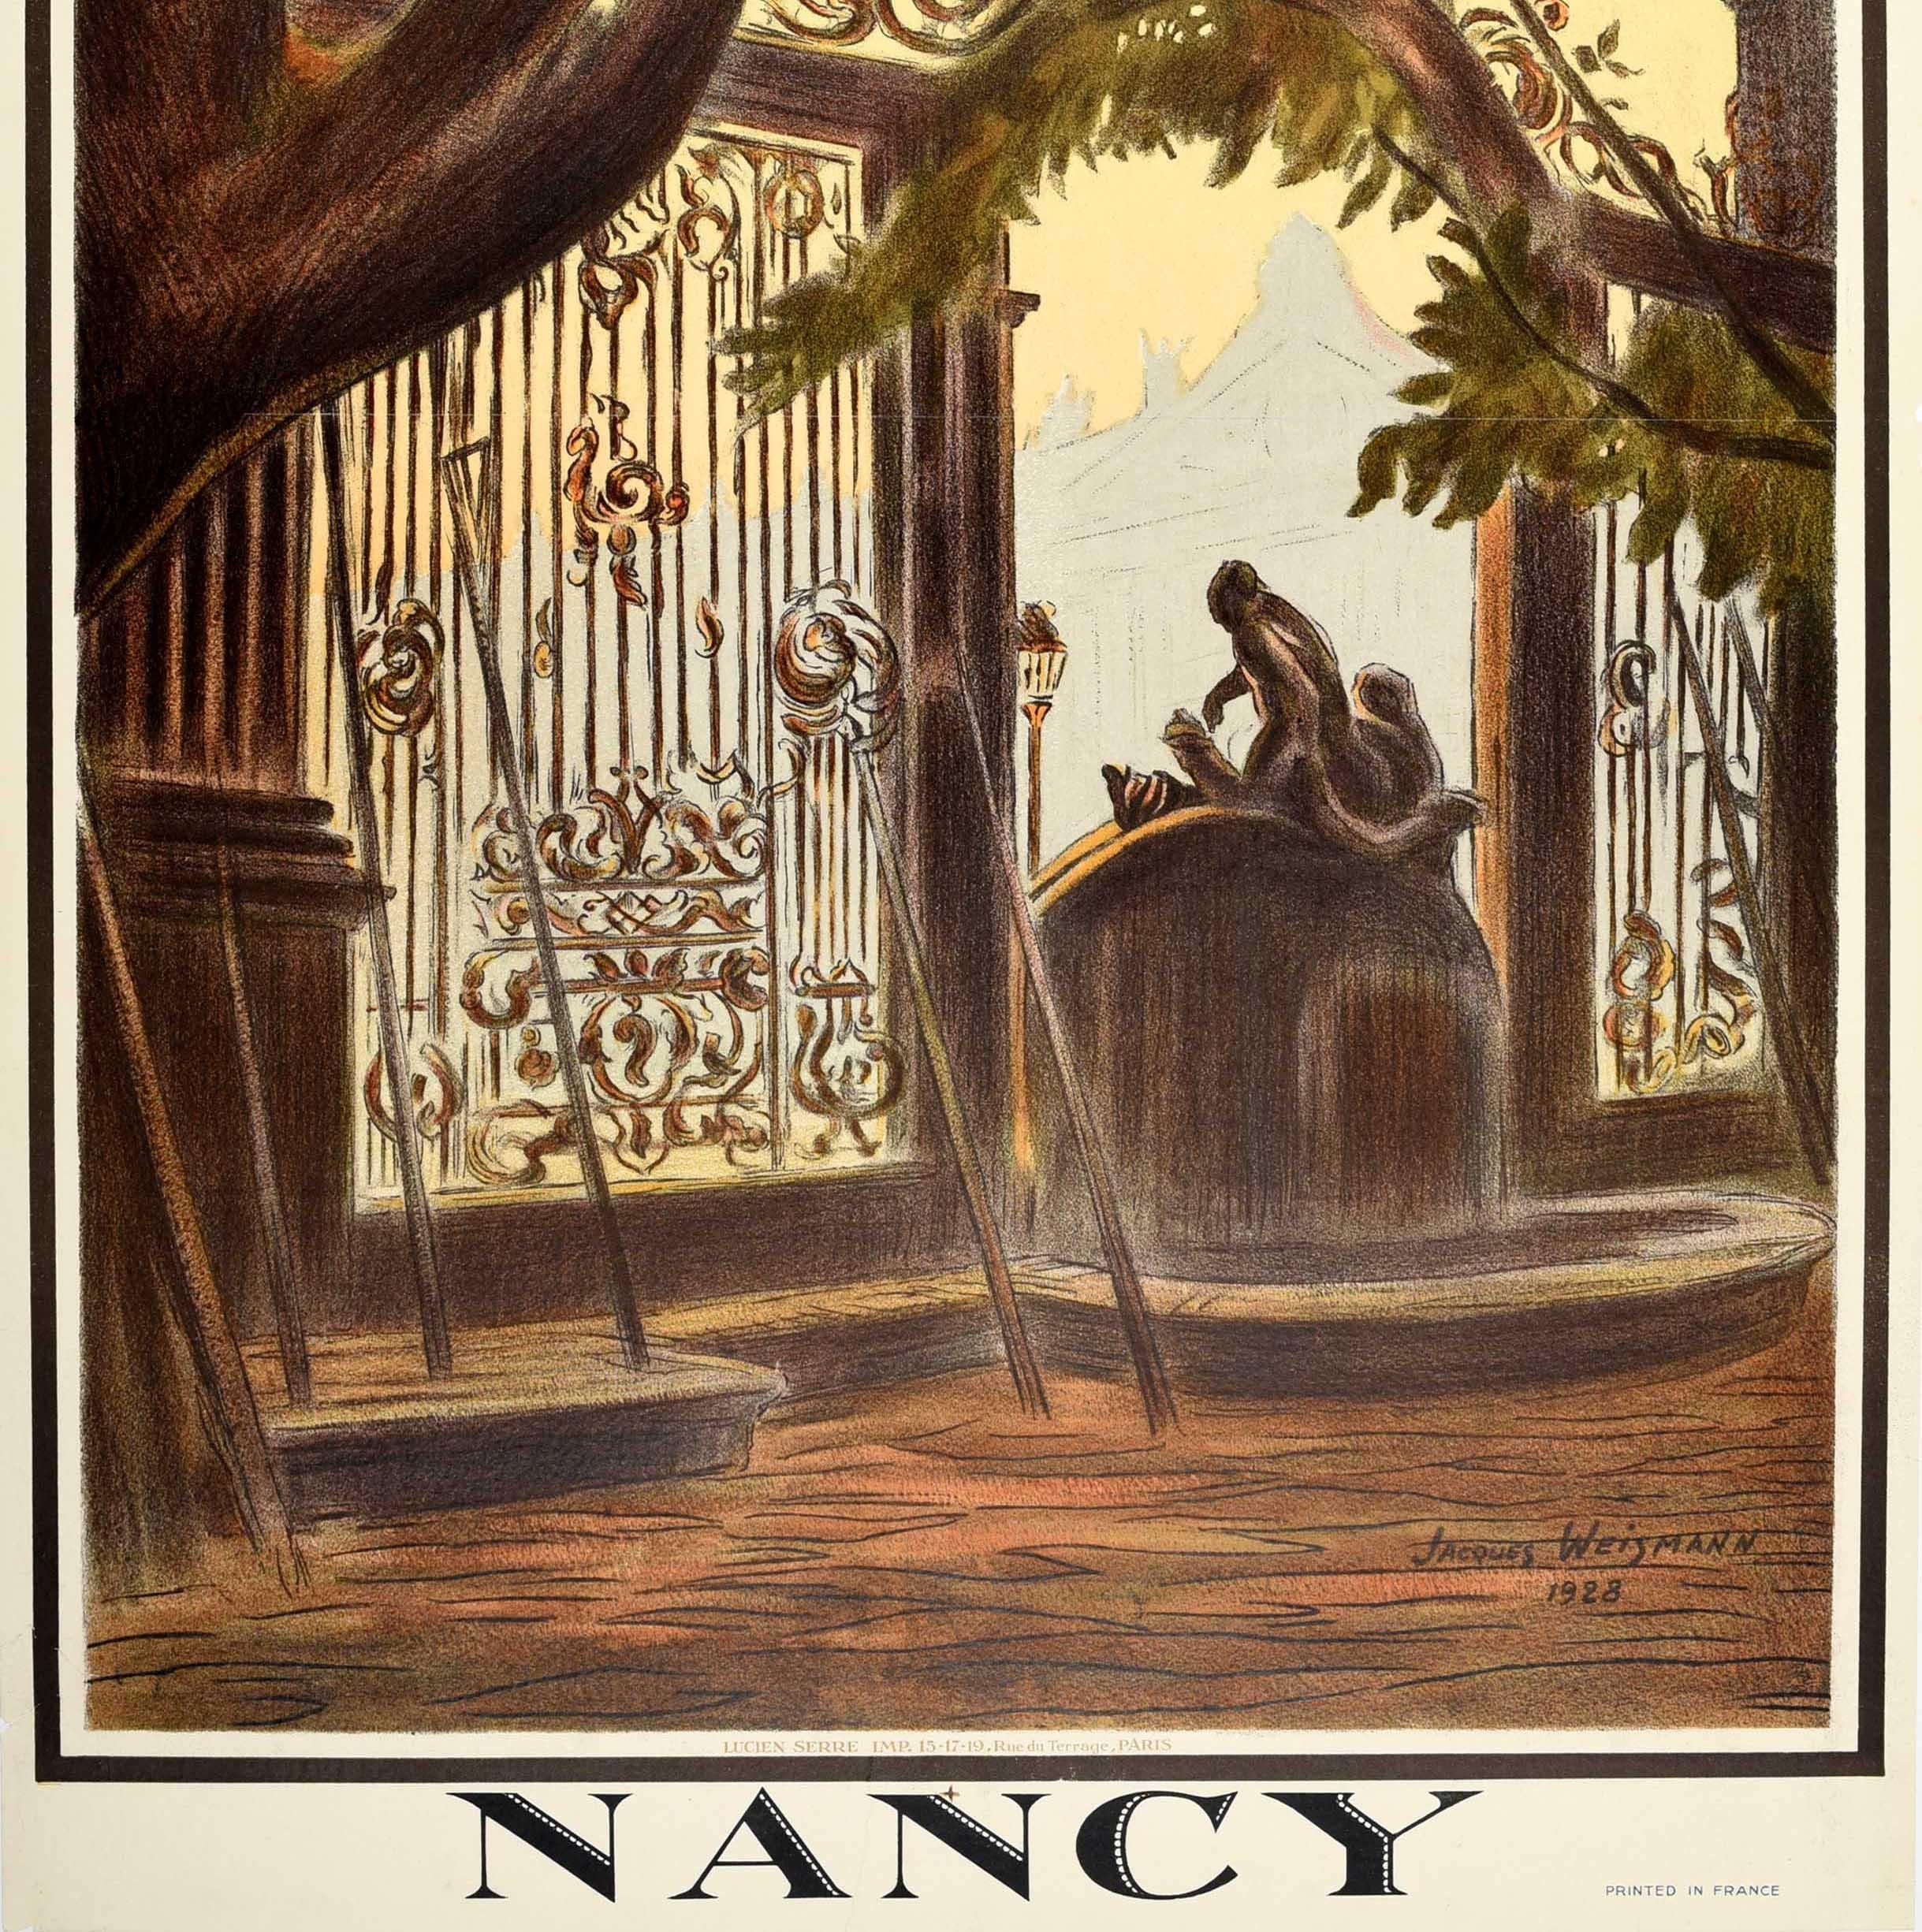 Originelles Vintage-Reiseplakat der französischen Ostbahn für Nancy mit einem atemberaubenden Kunstwerk, das eine Ansicht des Place Stanislas aus dem 18. Jahrhundert von der Rückseite des Fontaine de Neptune-Brunnens und des verschnörkelten goldenen